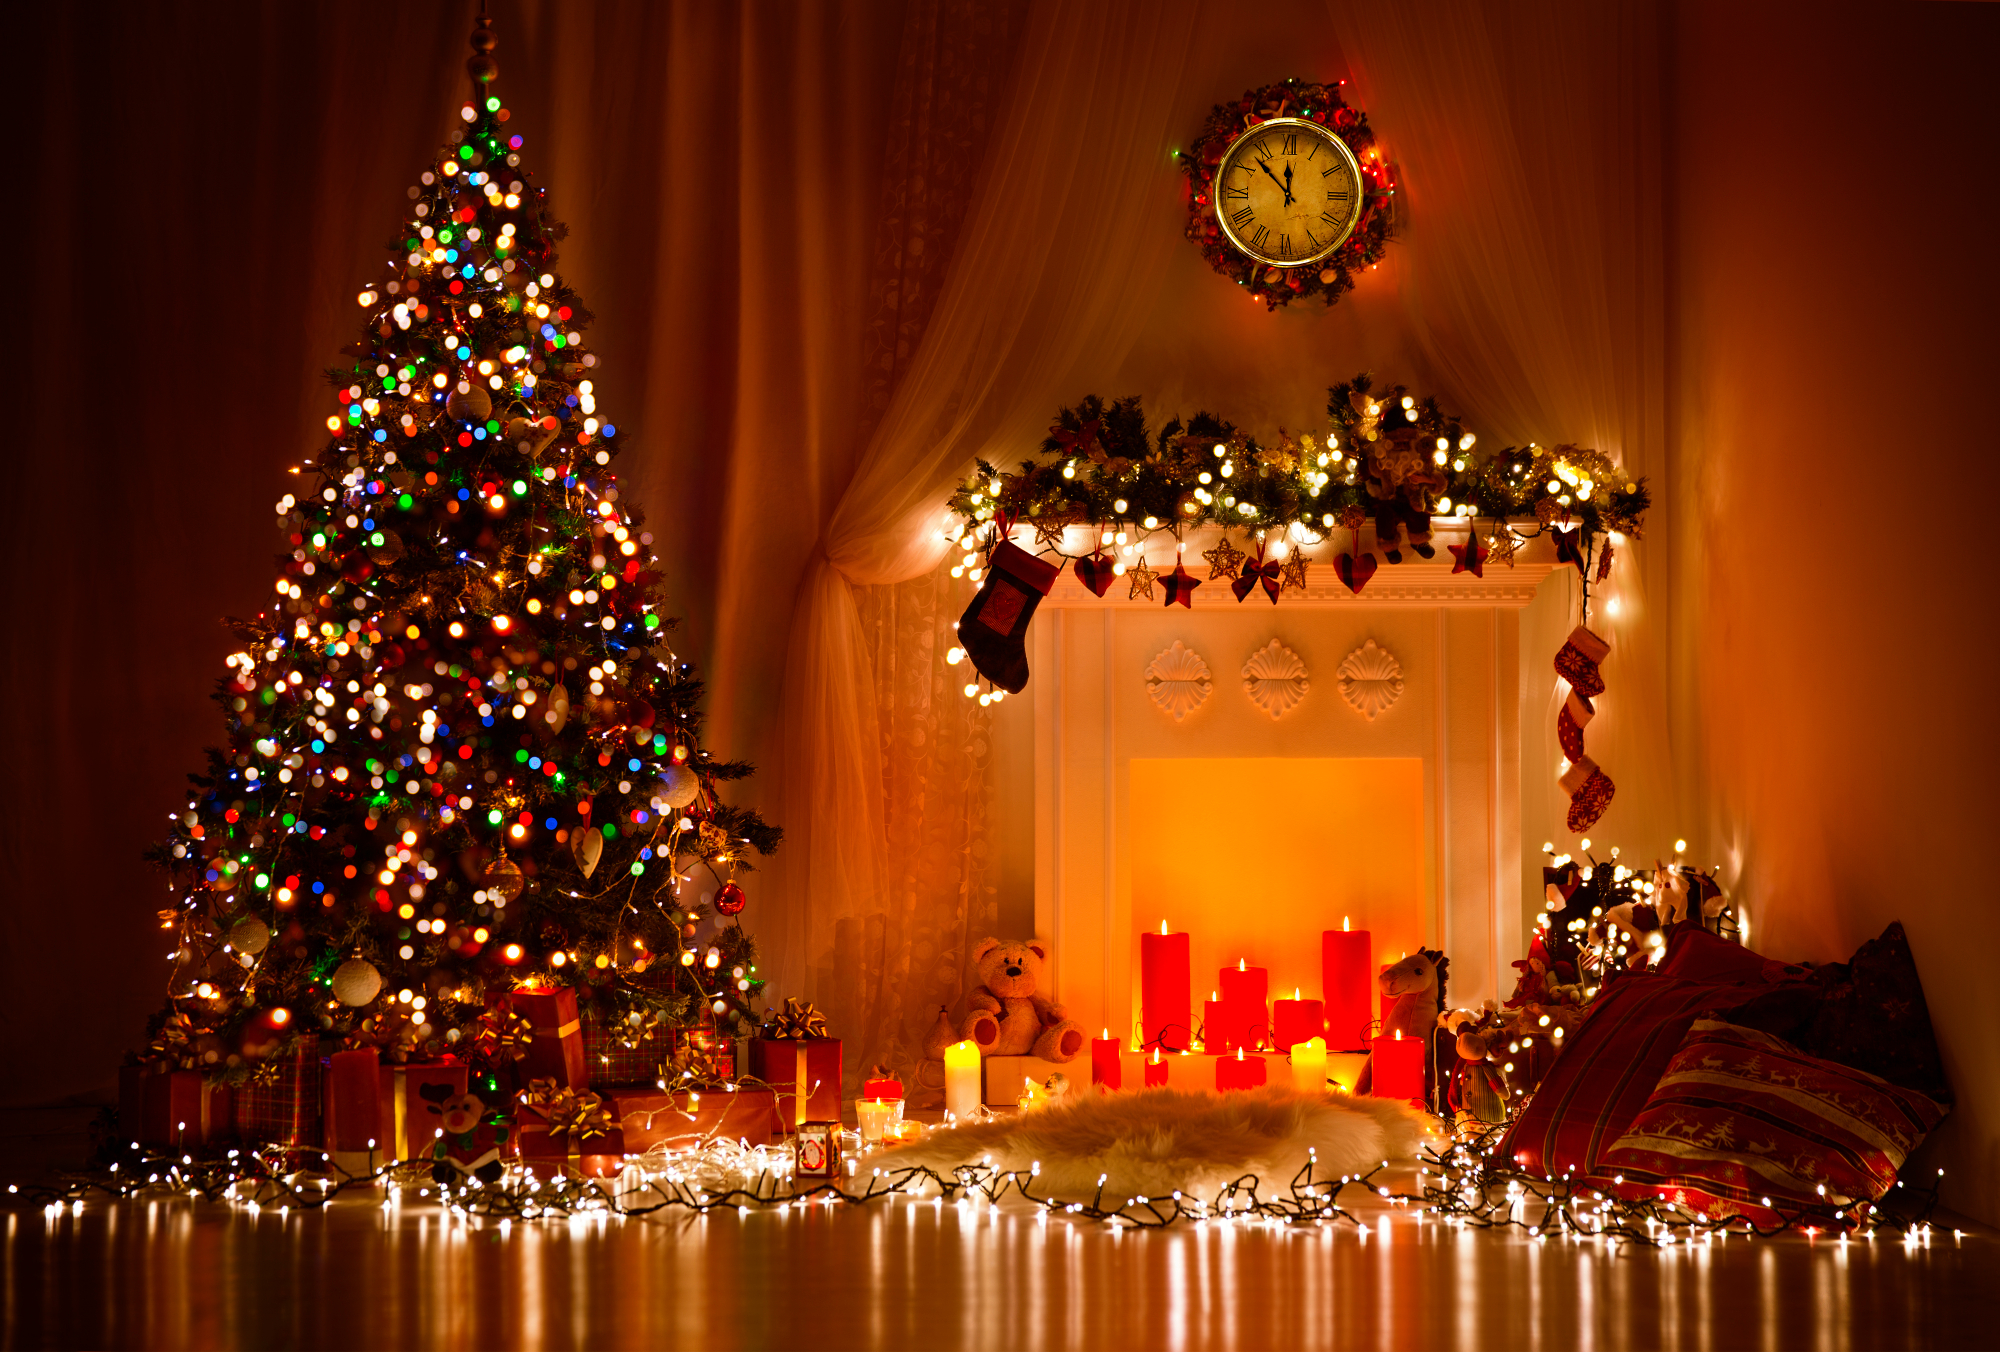 Božična jelka je obvezni del vsakega doma v prazničnem času